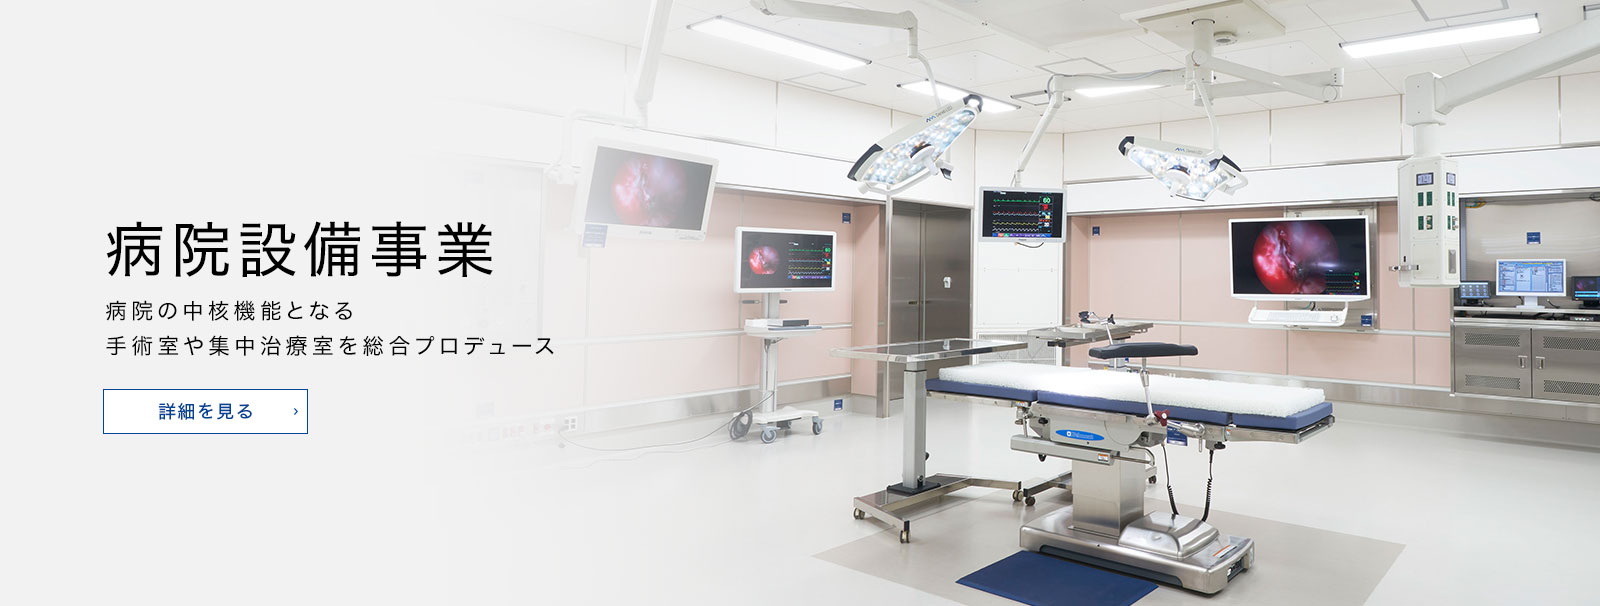 病院設備事業 病院の中核機能となる手術室や集中治療室を総合プロデュース